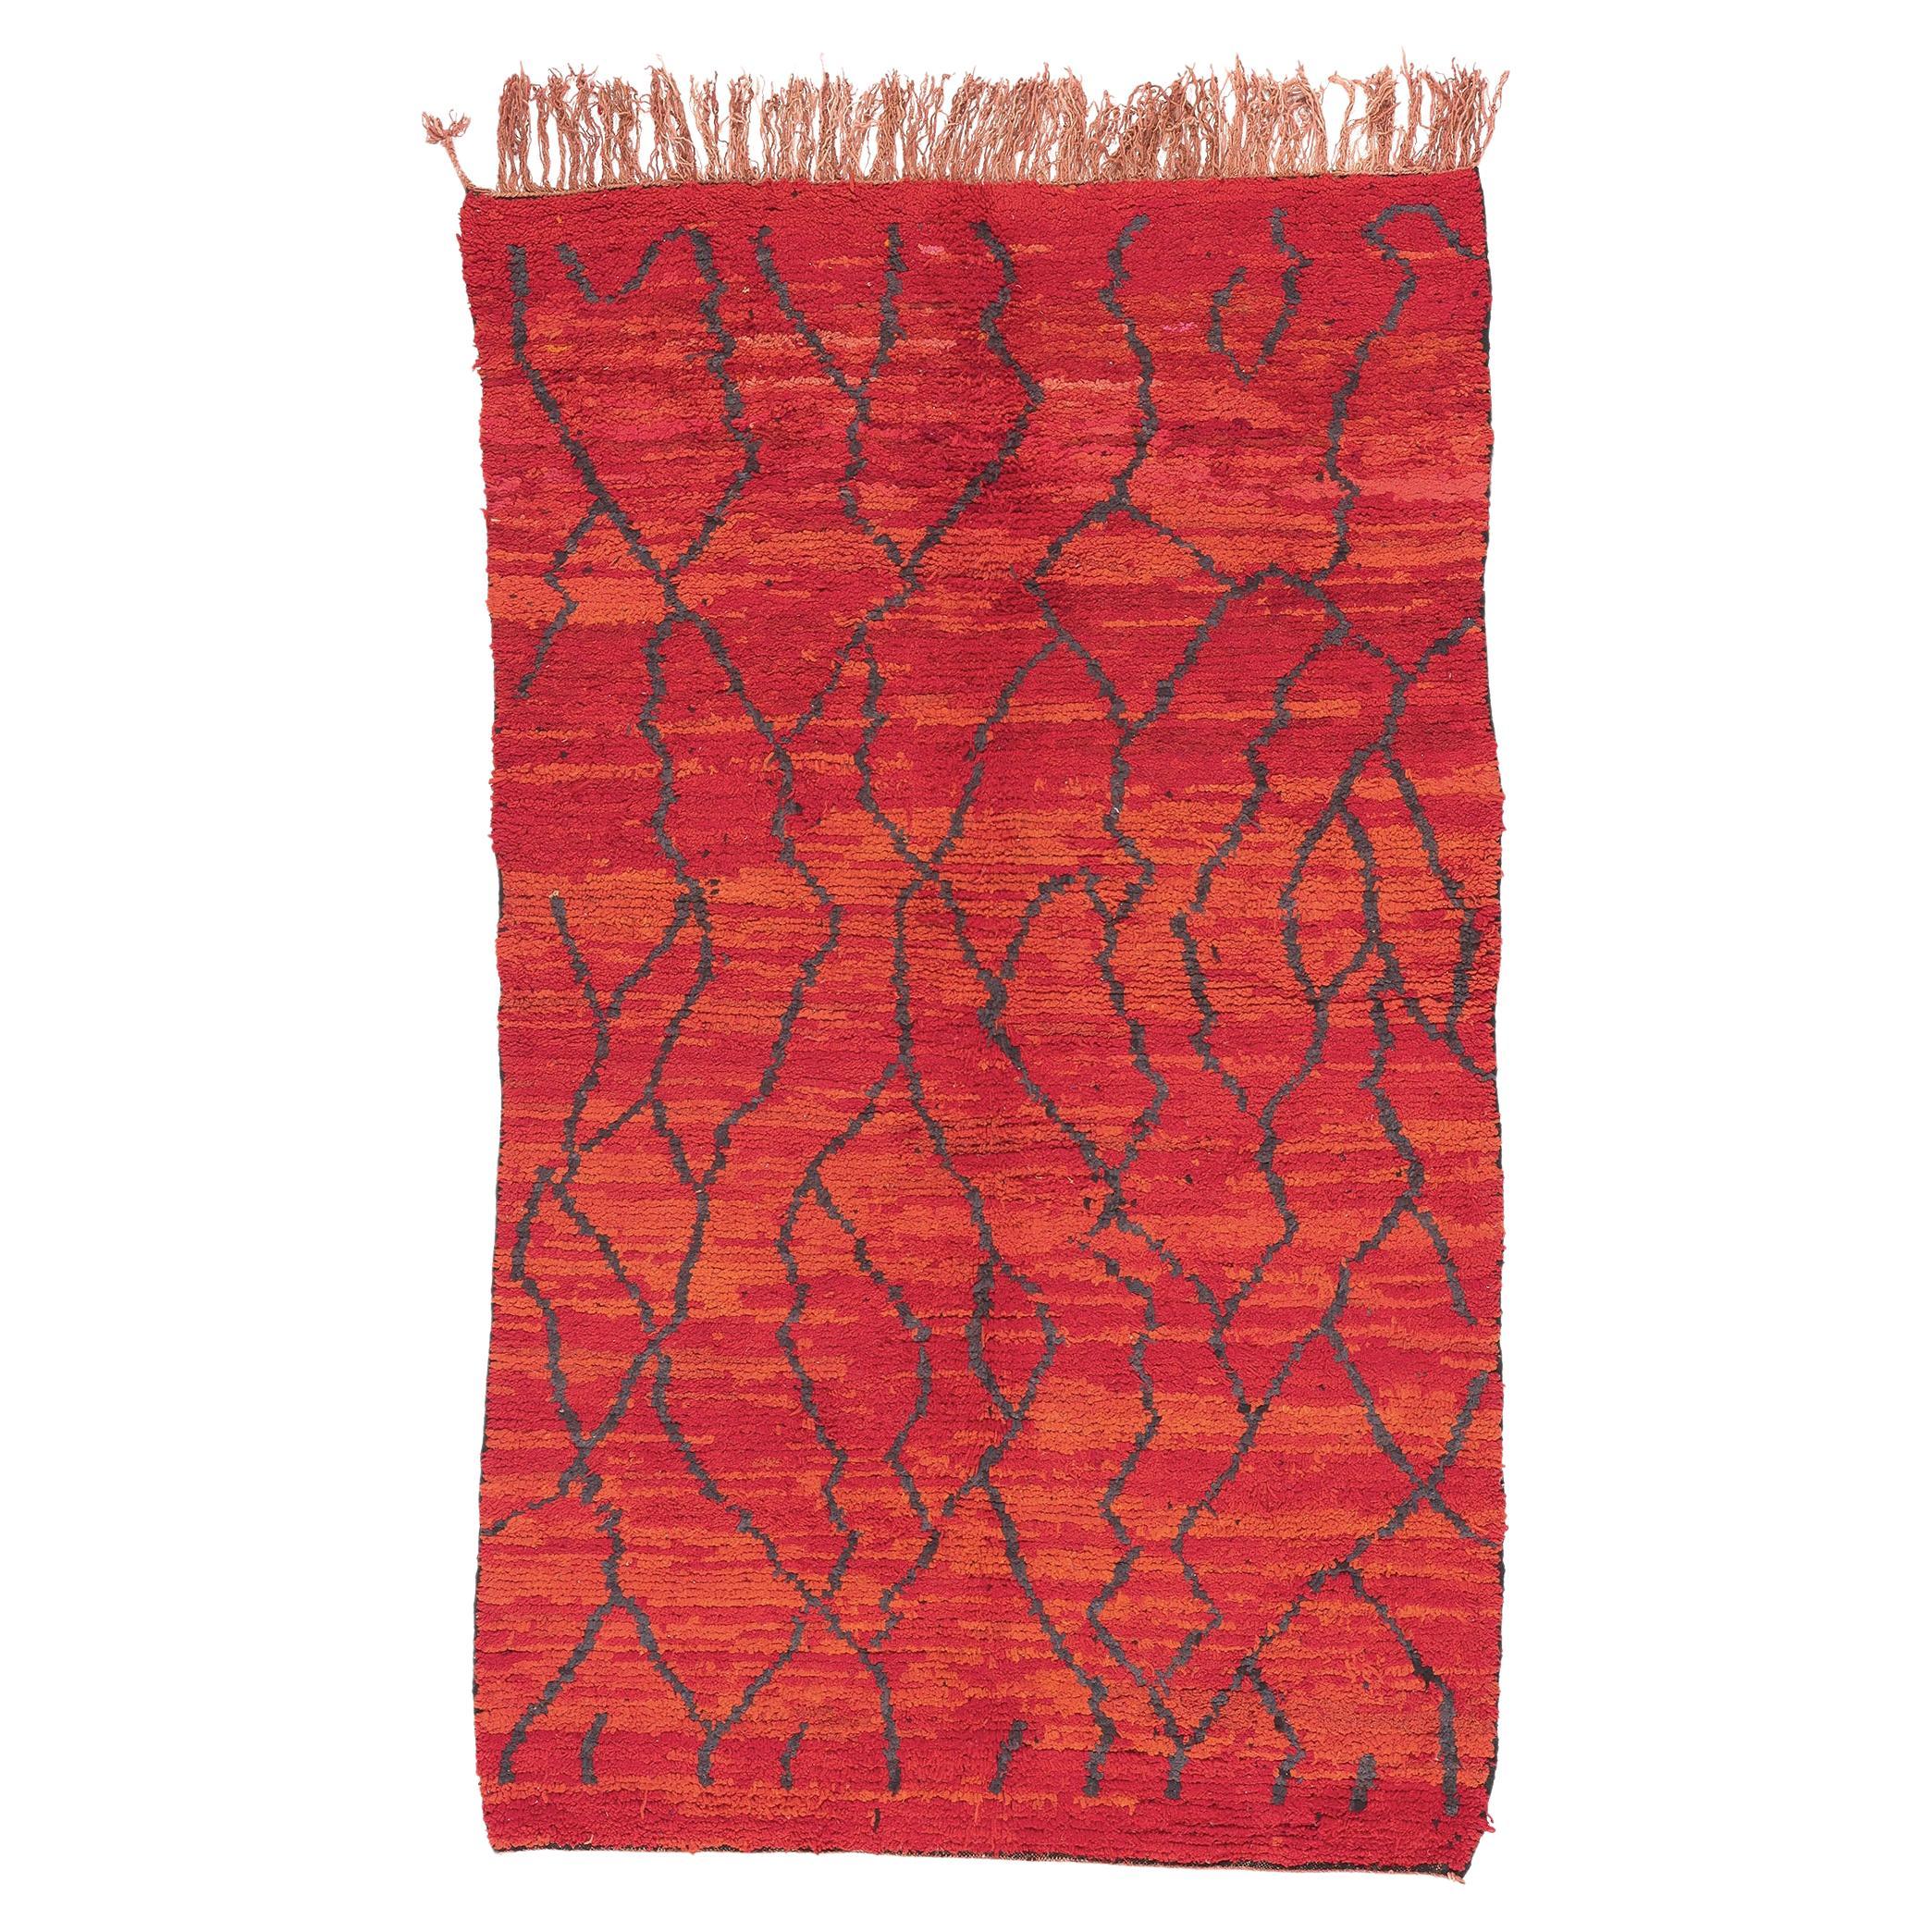 Marokkanischer roter Talsint-Teppich im Vintage-Stil, abstrakter Expressionismus trifft Maximalismus